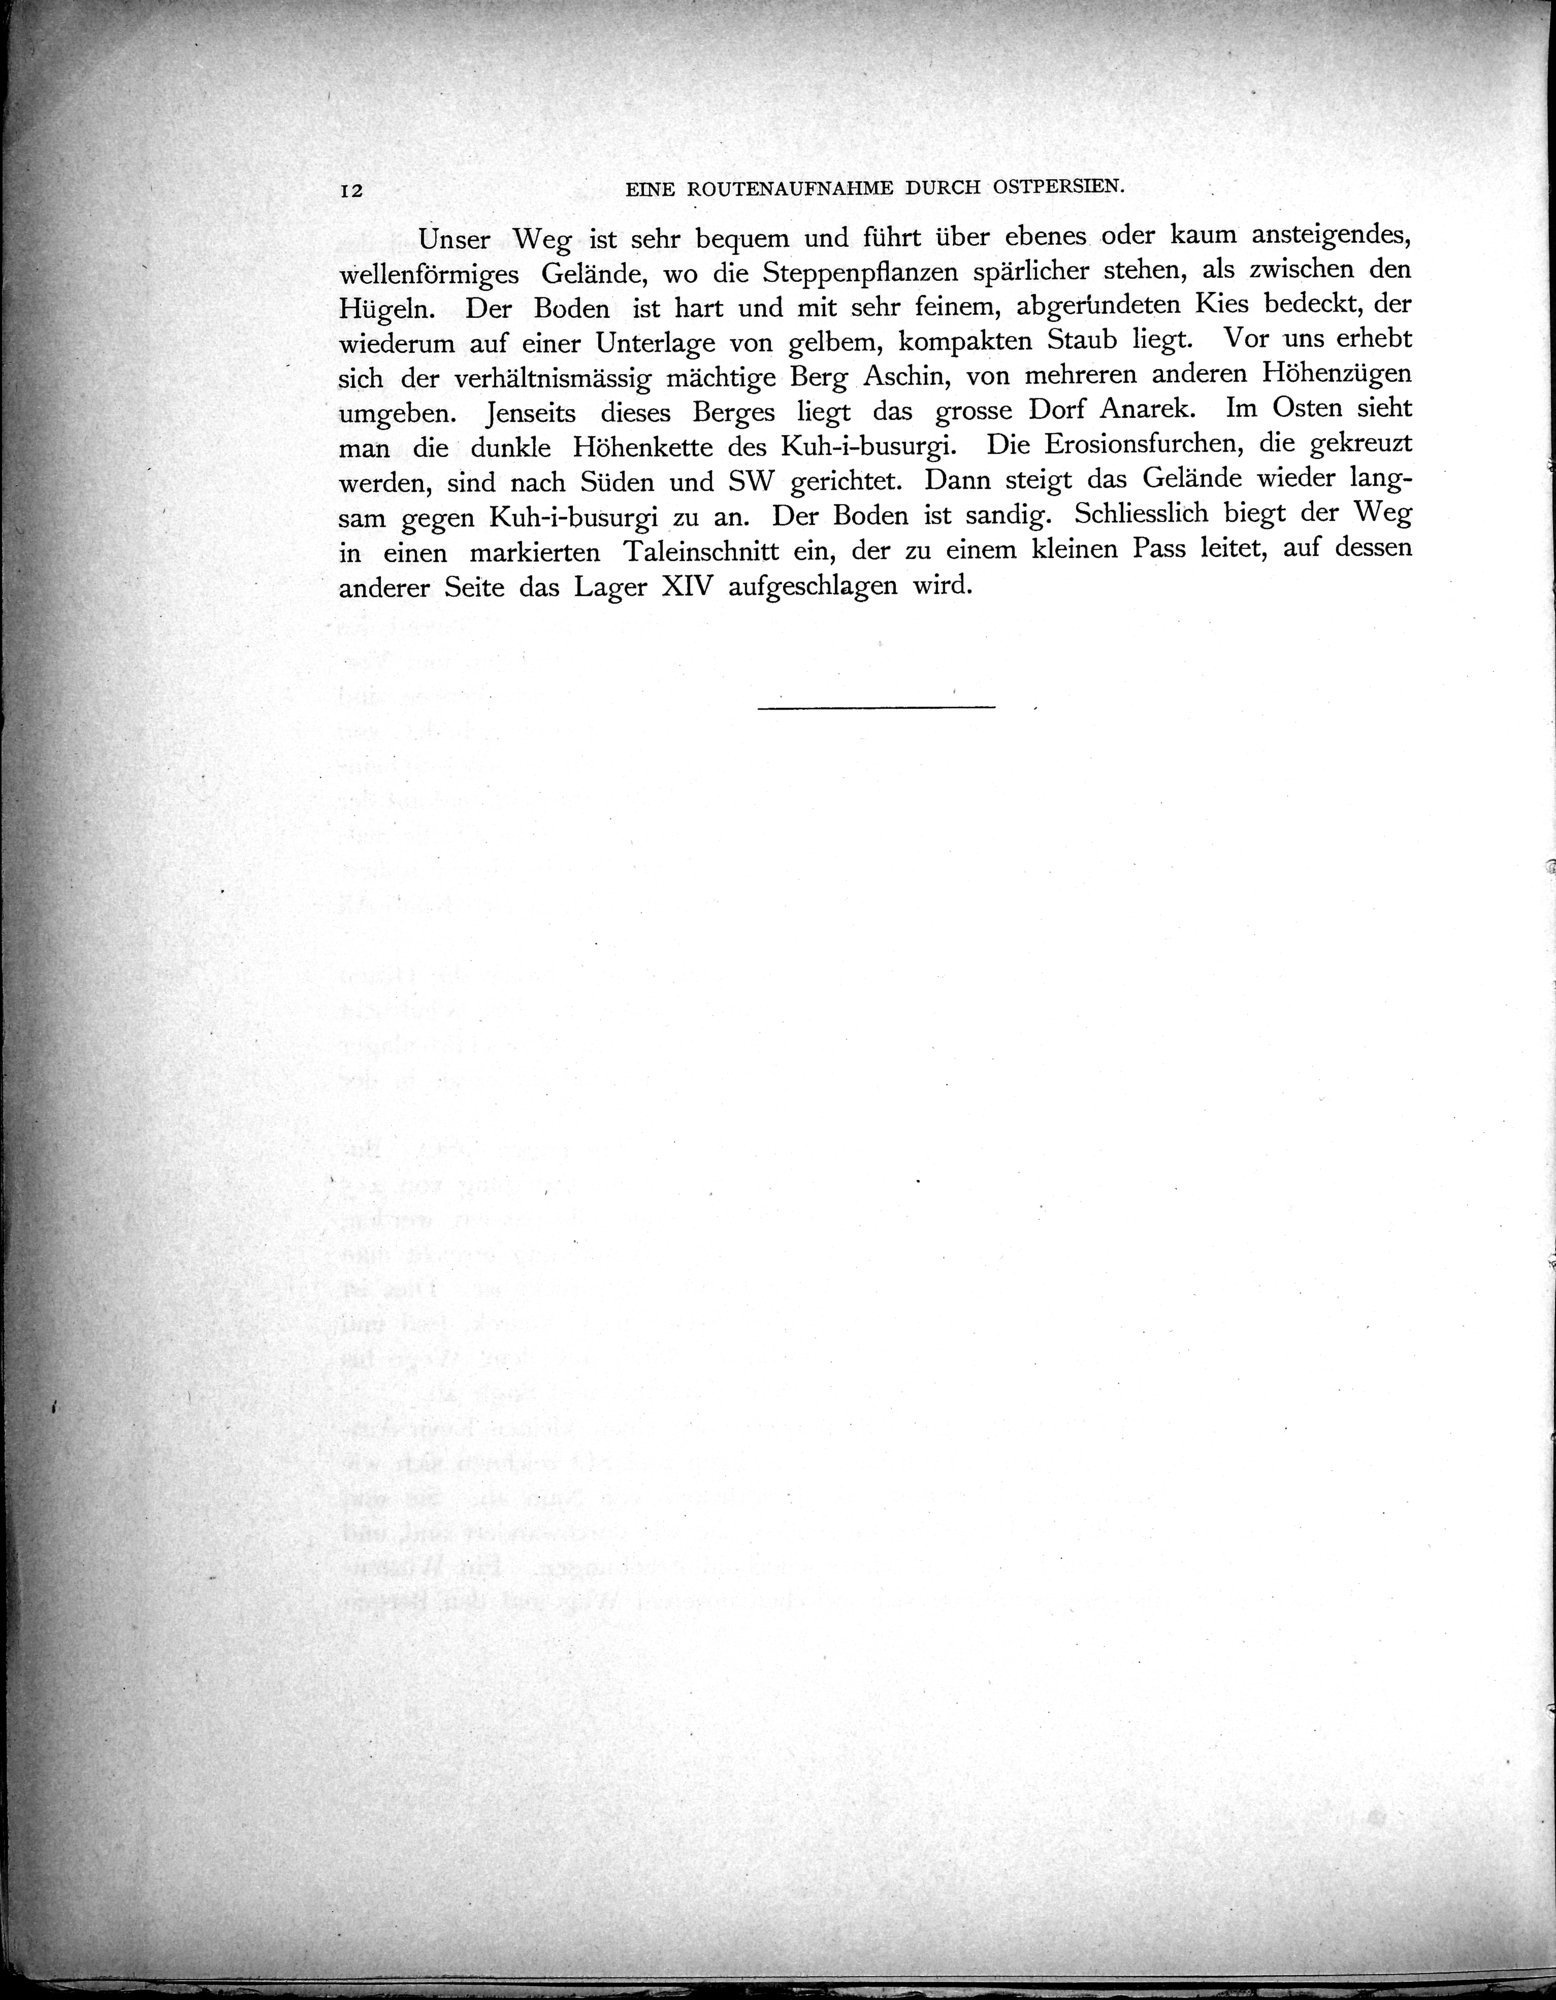 Eine Routenaufnahme durch Ostpersien : vol.1 / Page 48 (Grayscale High Resolution Image)